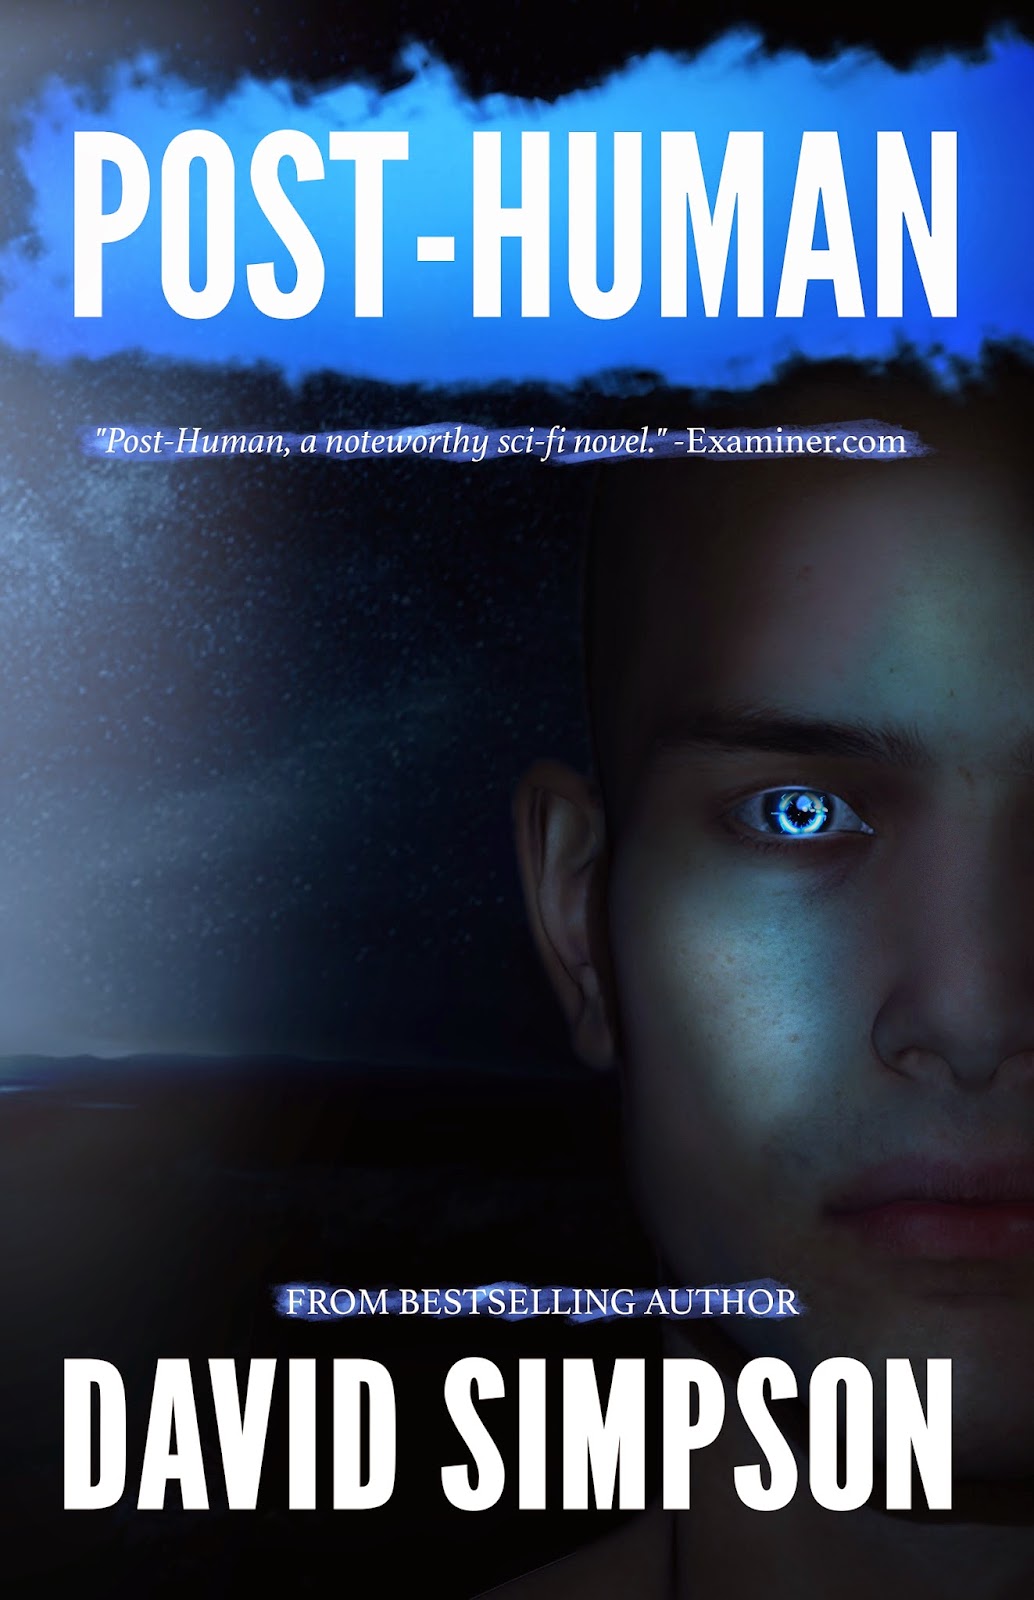 Книга Human. Second Human книга. Пост хуман ббринги. 10 Процентов ХЬЮМАН книга. Human post